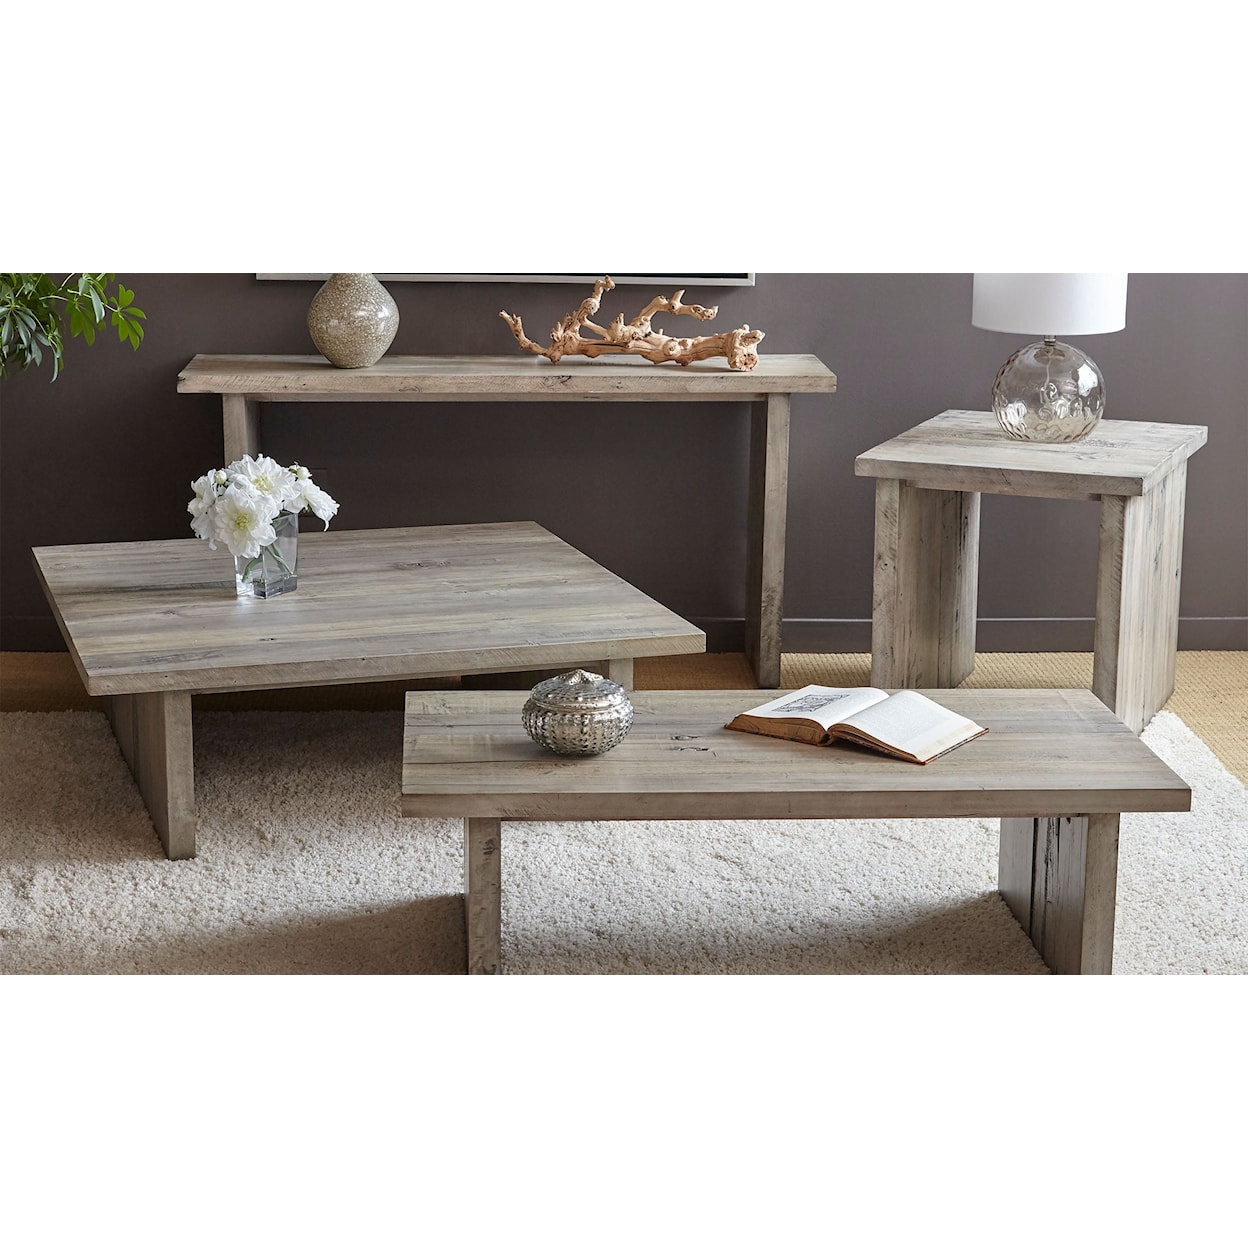 Napa Furniture Design Renewal Coffee Table